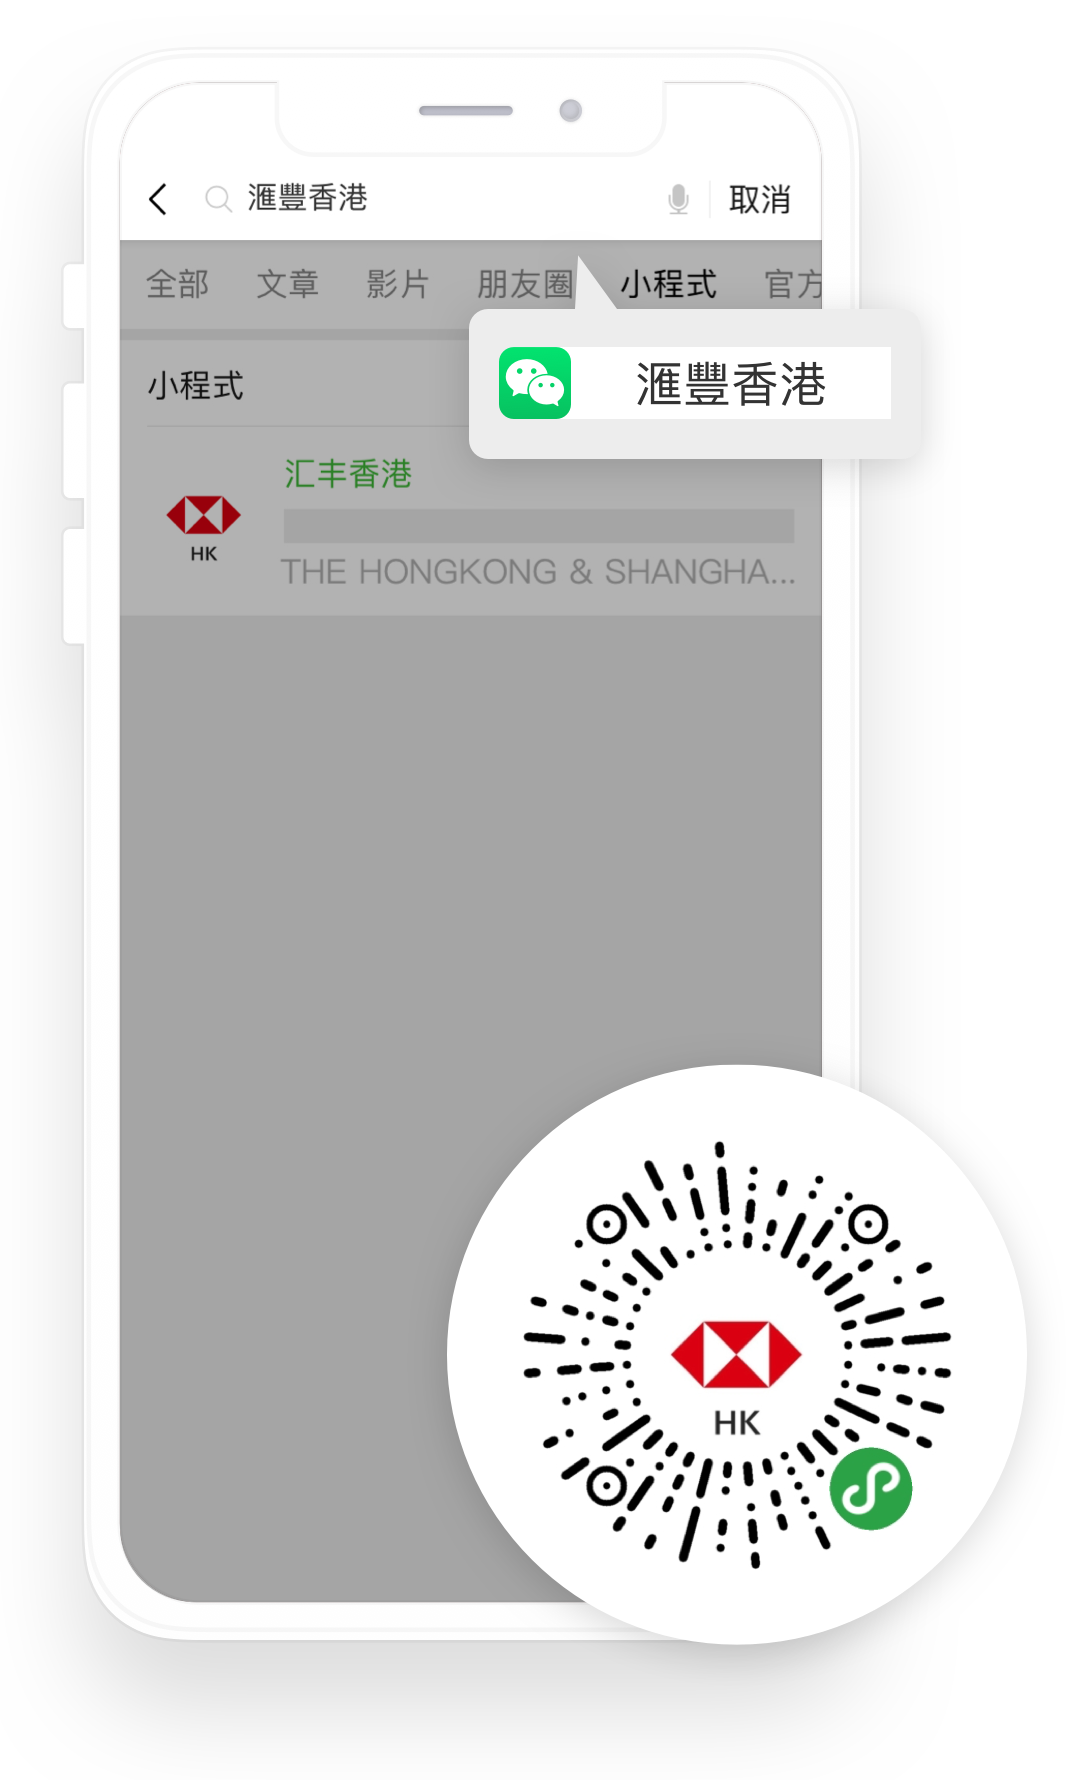 如何進入滙豐香港微信小程序的截圖；圖片使用於滙豐香港微信官方帳號頁面。